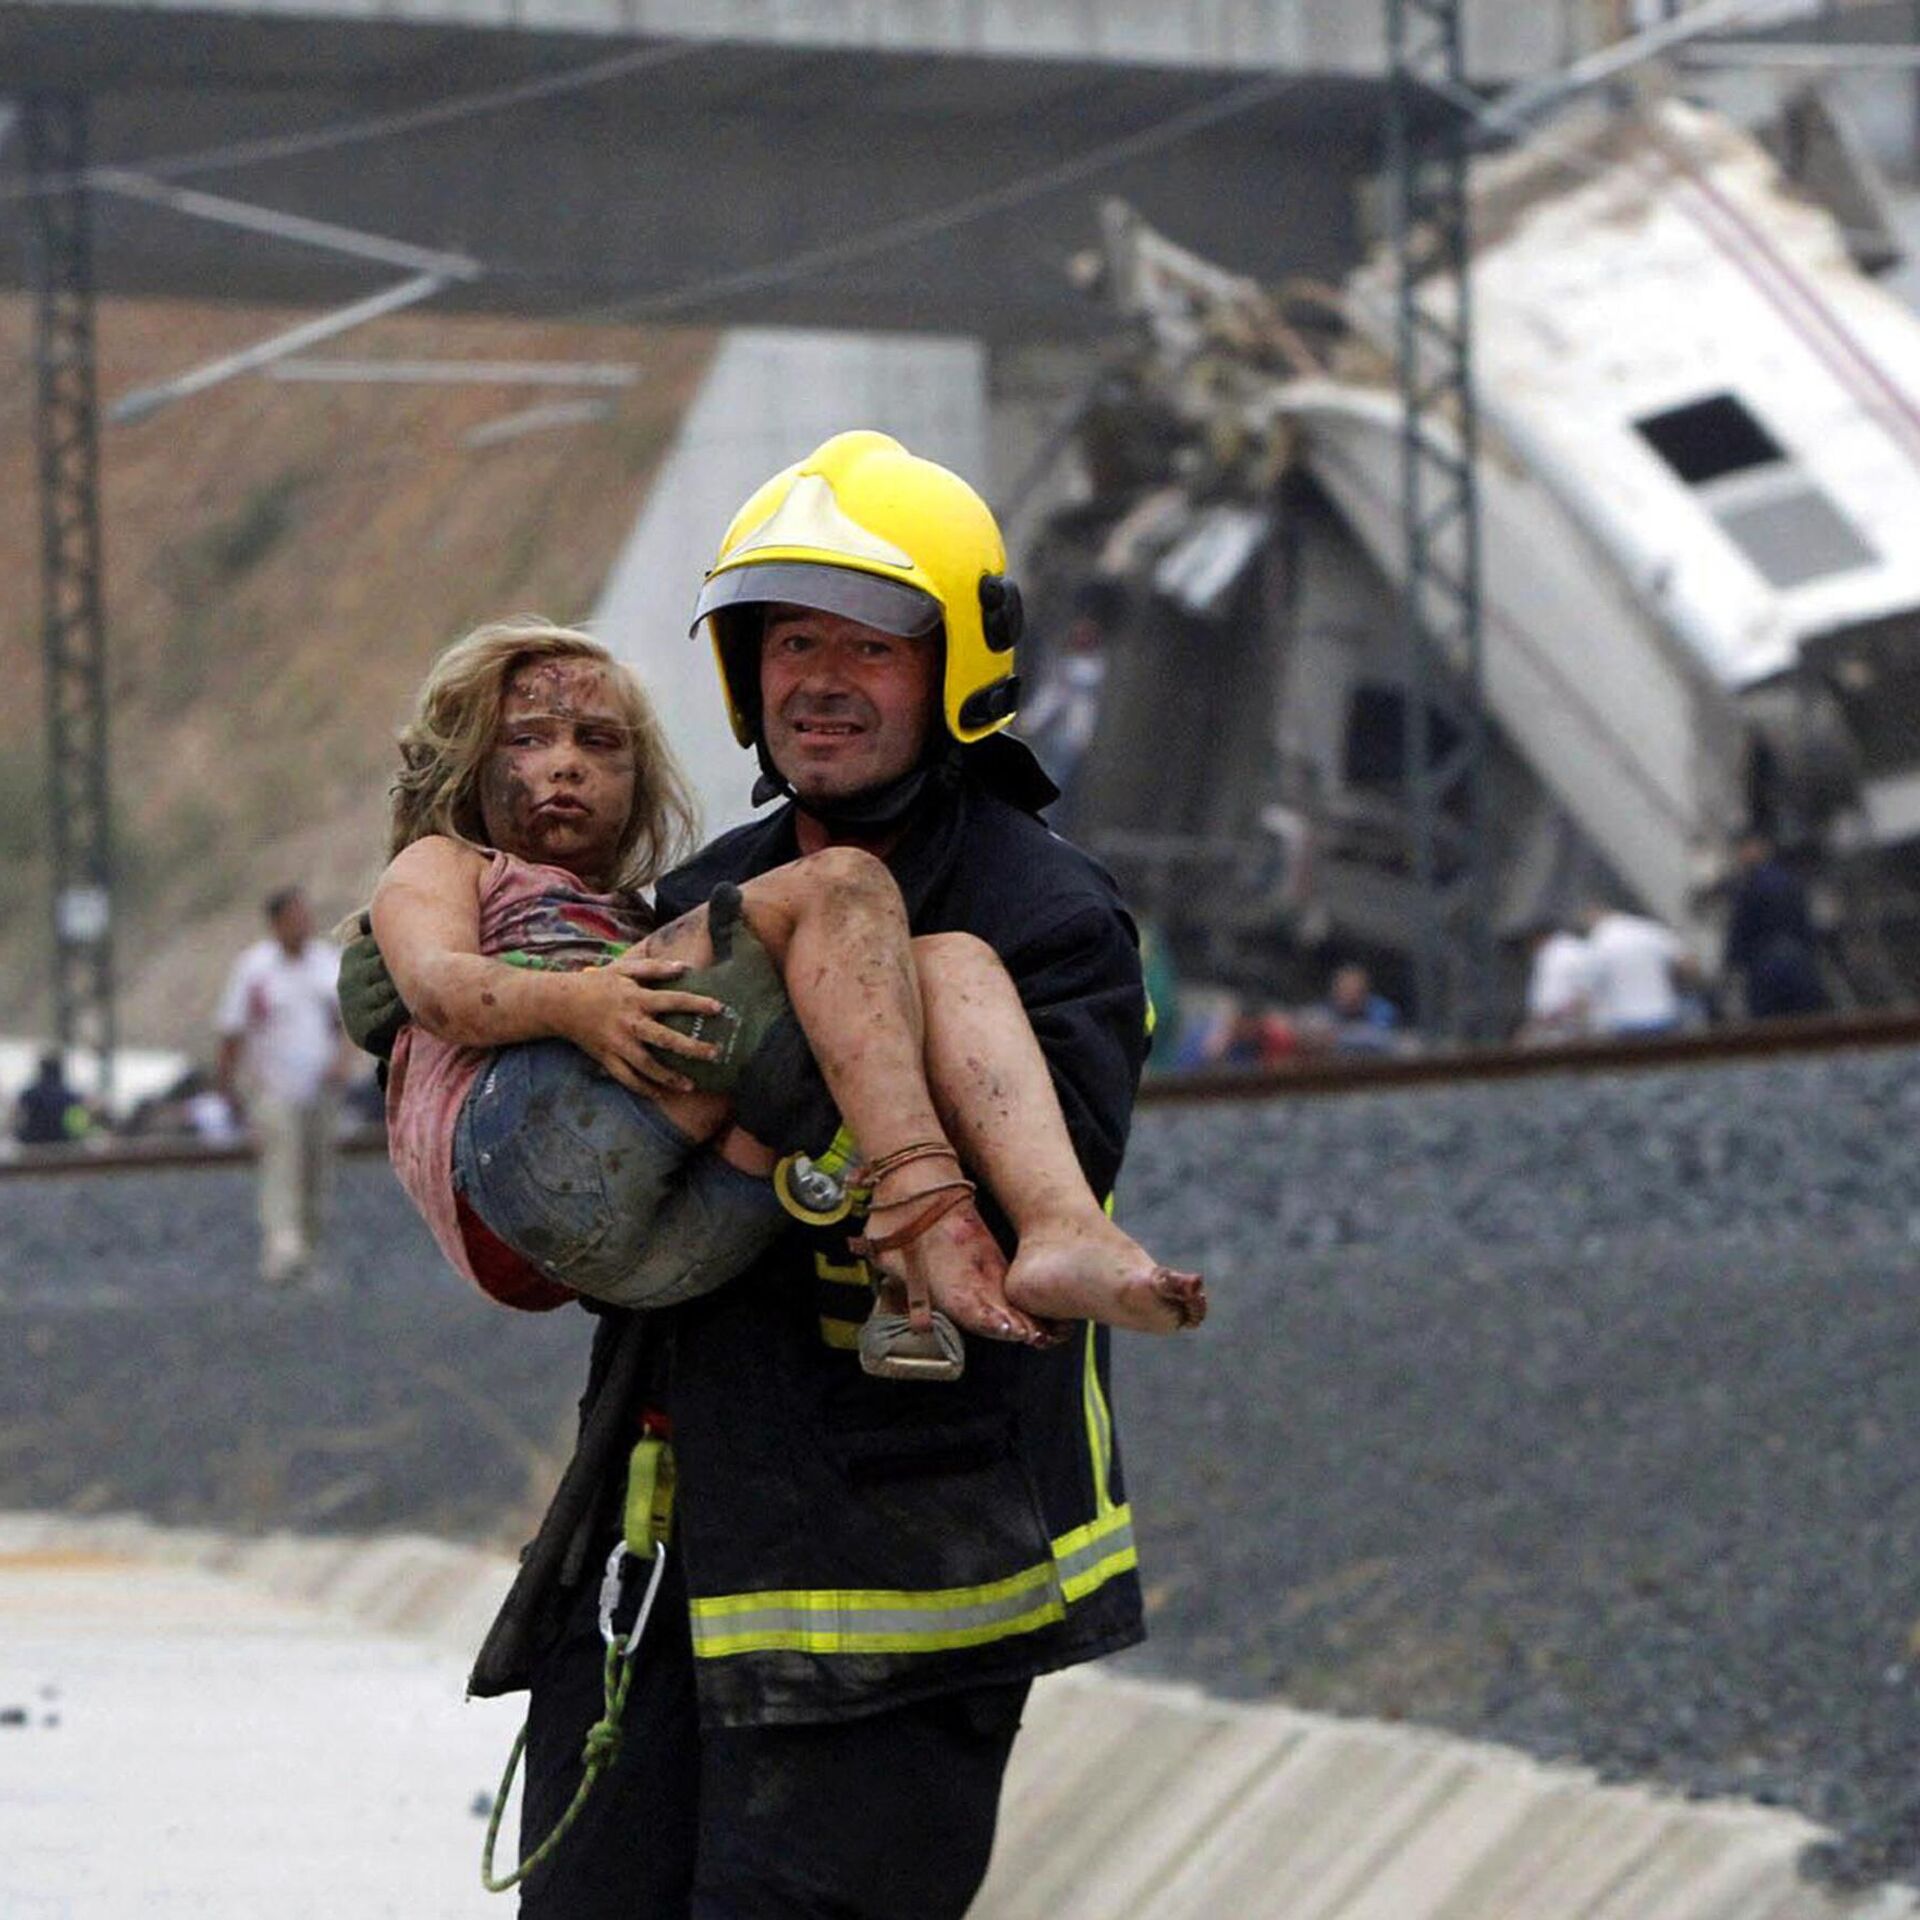 Случай спасения человека. Спасатели спасают людей. Пожарные спасают людей.